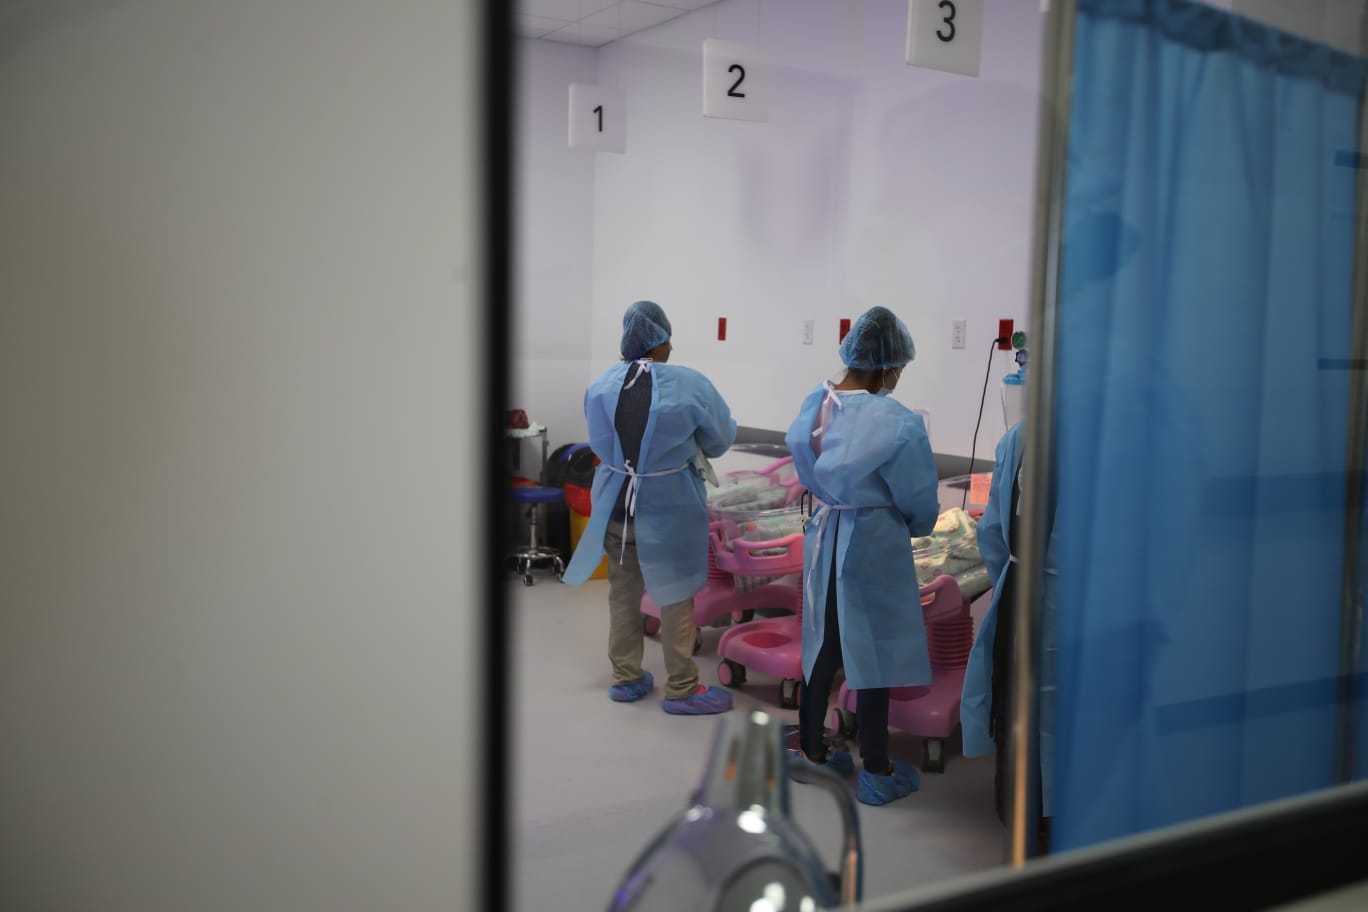 El 70 por ciento del equipo del Hospital Nacional de Chimaltenango fue trasladado del Hospital Temporal del Parque de la Industria, según las pesquisas en un caso de corrupción que desarrolla el Ministerio público. (Foto Prensa Libre: Carlos Hernández)